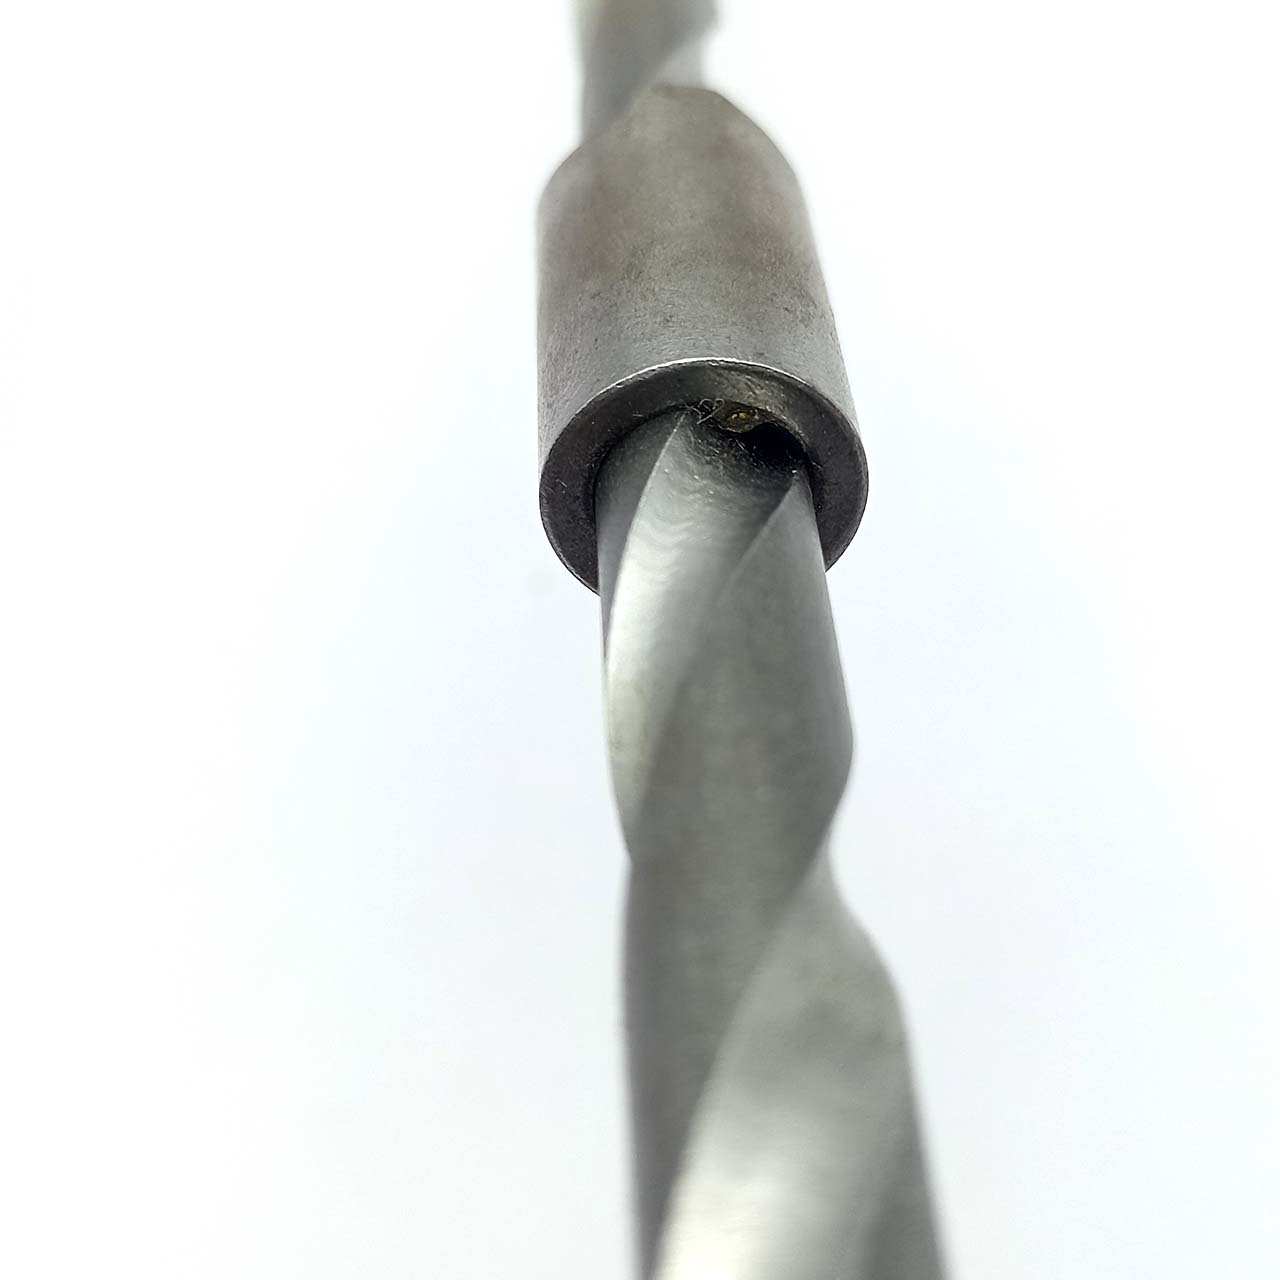 Đai ốc trượt của móc xoay buộc thép hoạt động trơn tru với trục vít me xoay